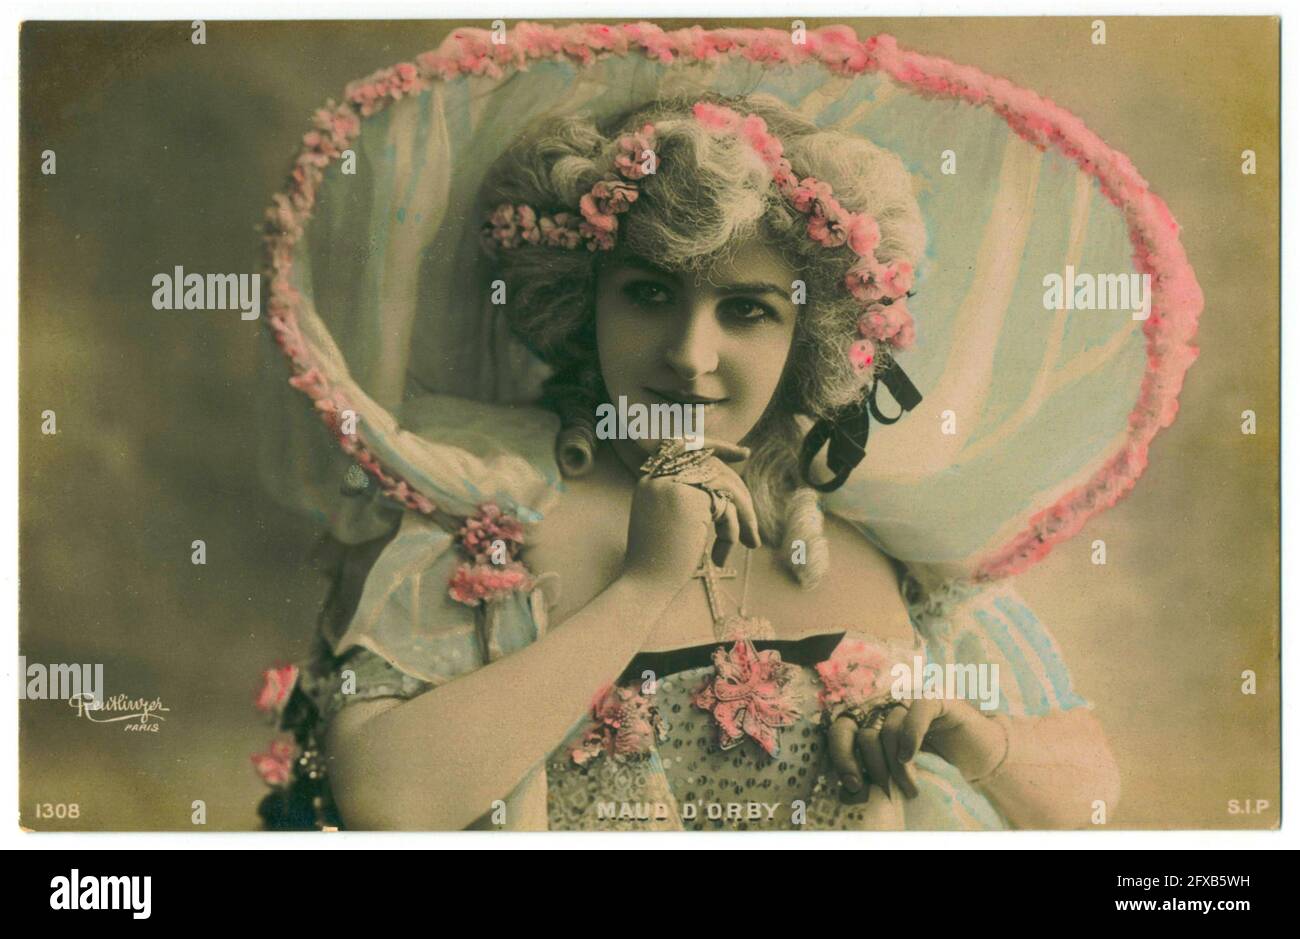 Léopold-Émile Reutlinger Vintage-Porträtfoto von Maud d d'Orby, Opernsängerin, Schauspielerin und Kunstmodel. Stockfoto